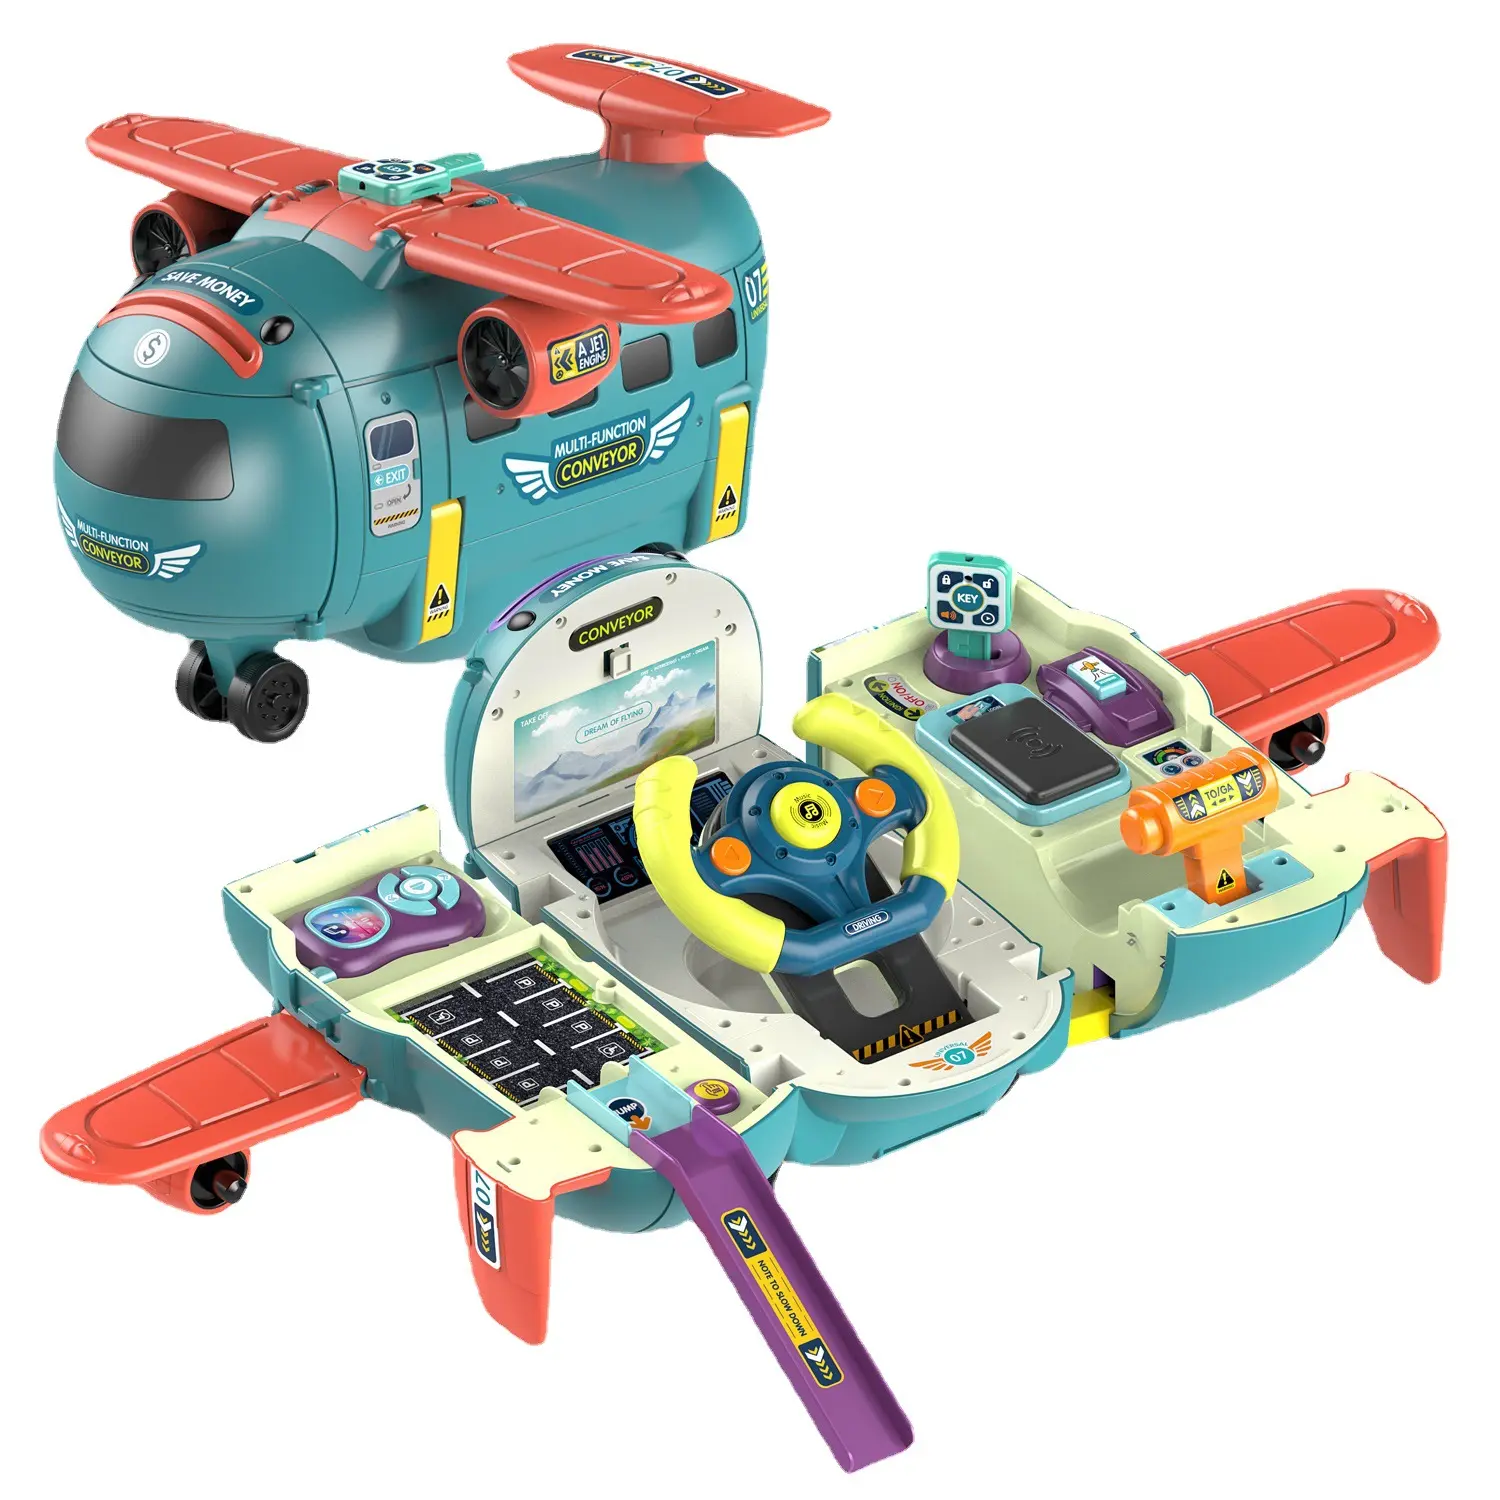 어린이 교육 장난감 비행기 3 in 1 변형 비행기 시뮬레이션 운전 핸들 장난감